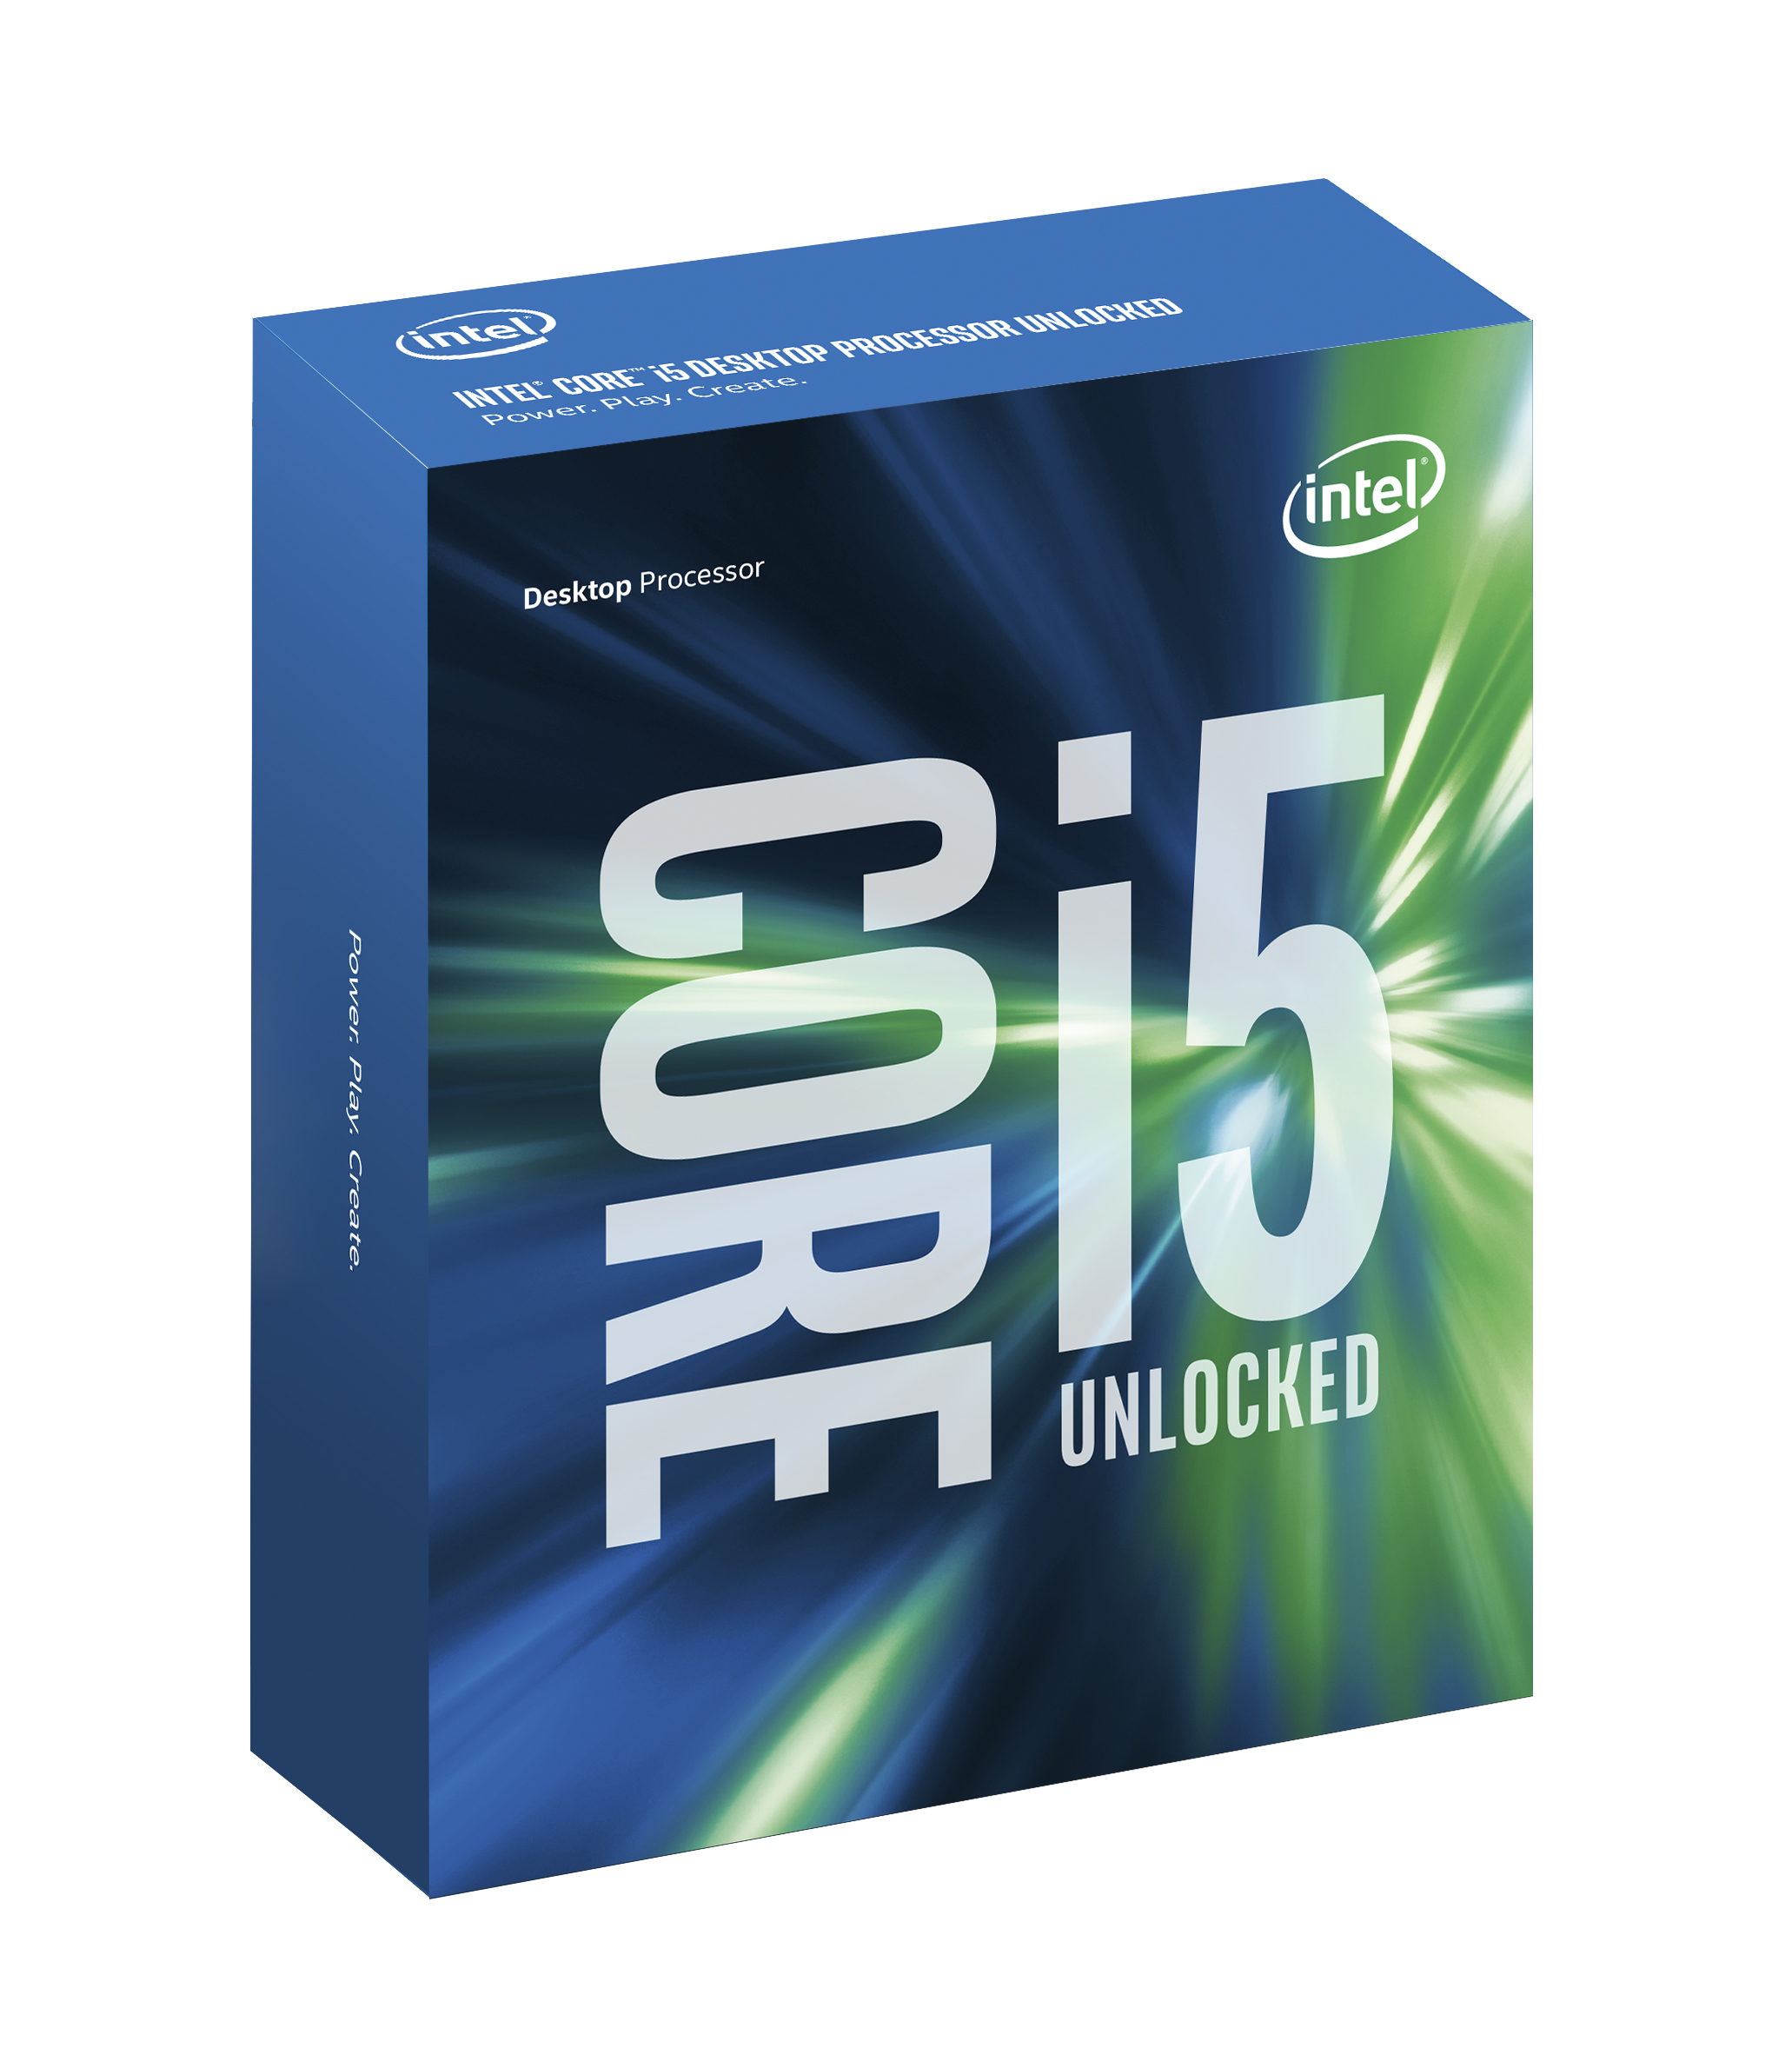 Det er allerede kjent at Intel jobber med en Core i7 7740K-CPU som er nærme Ryzen 5 1600x i ytelse.